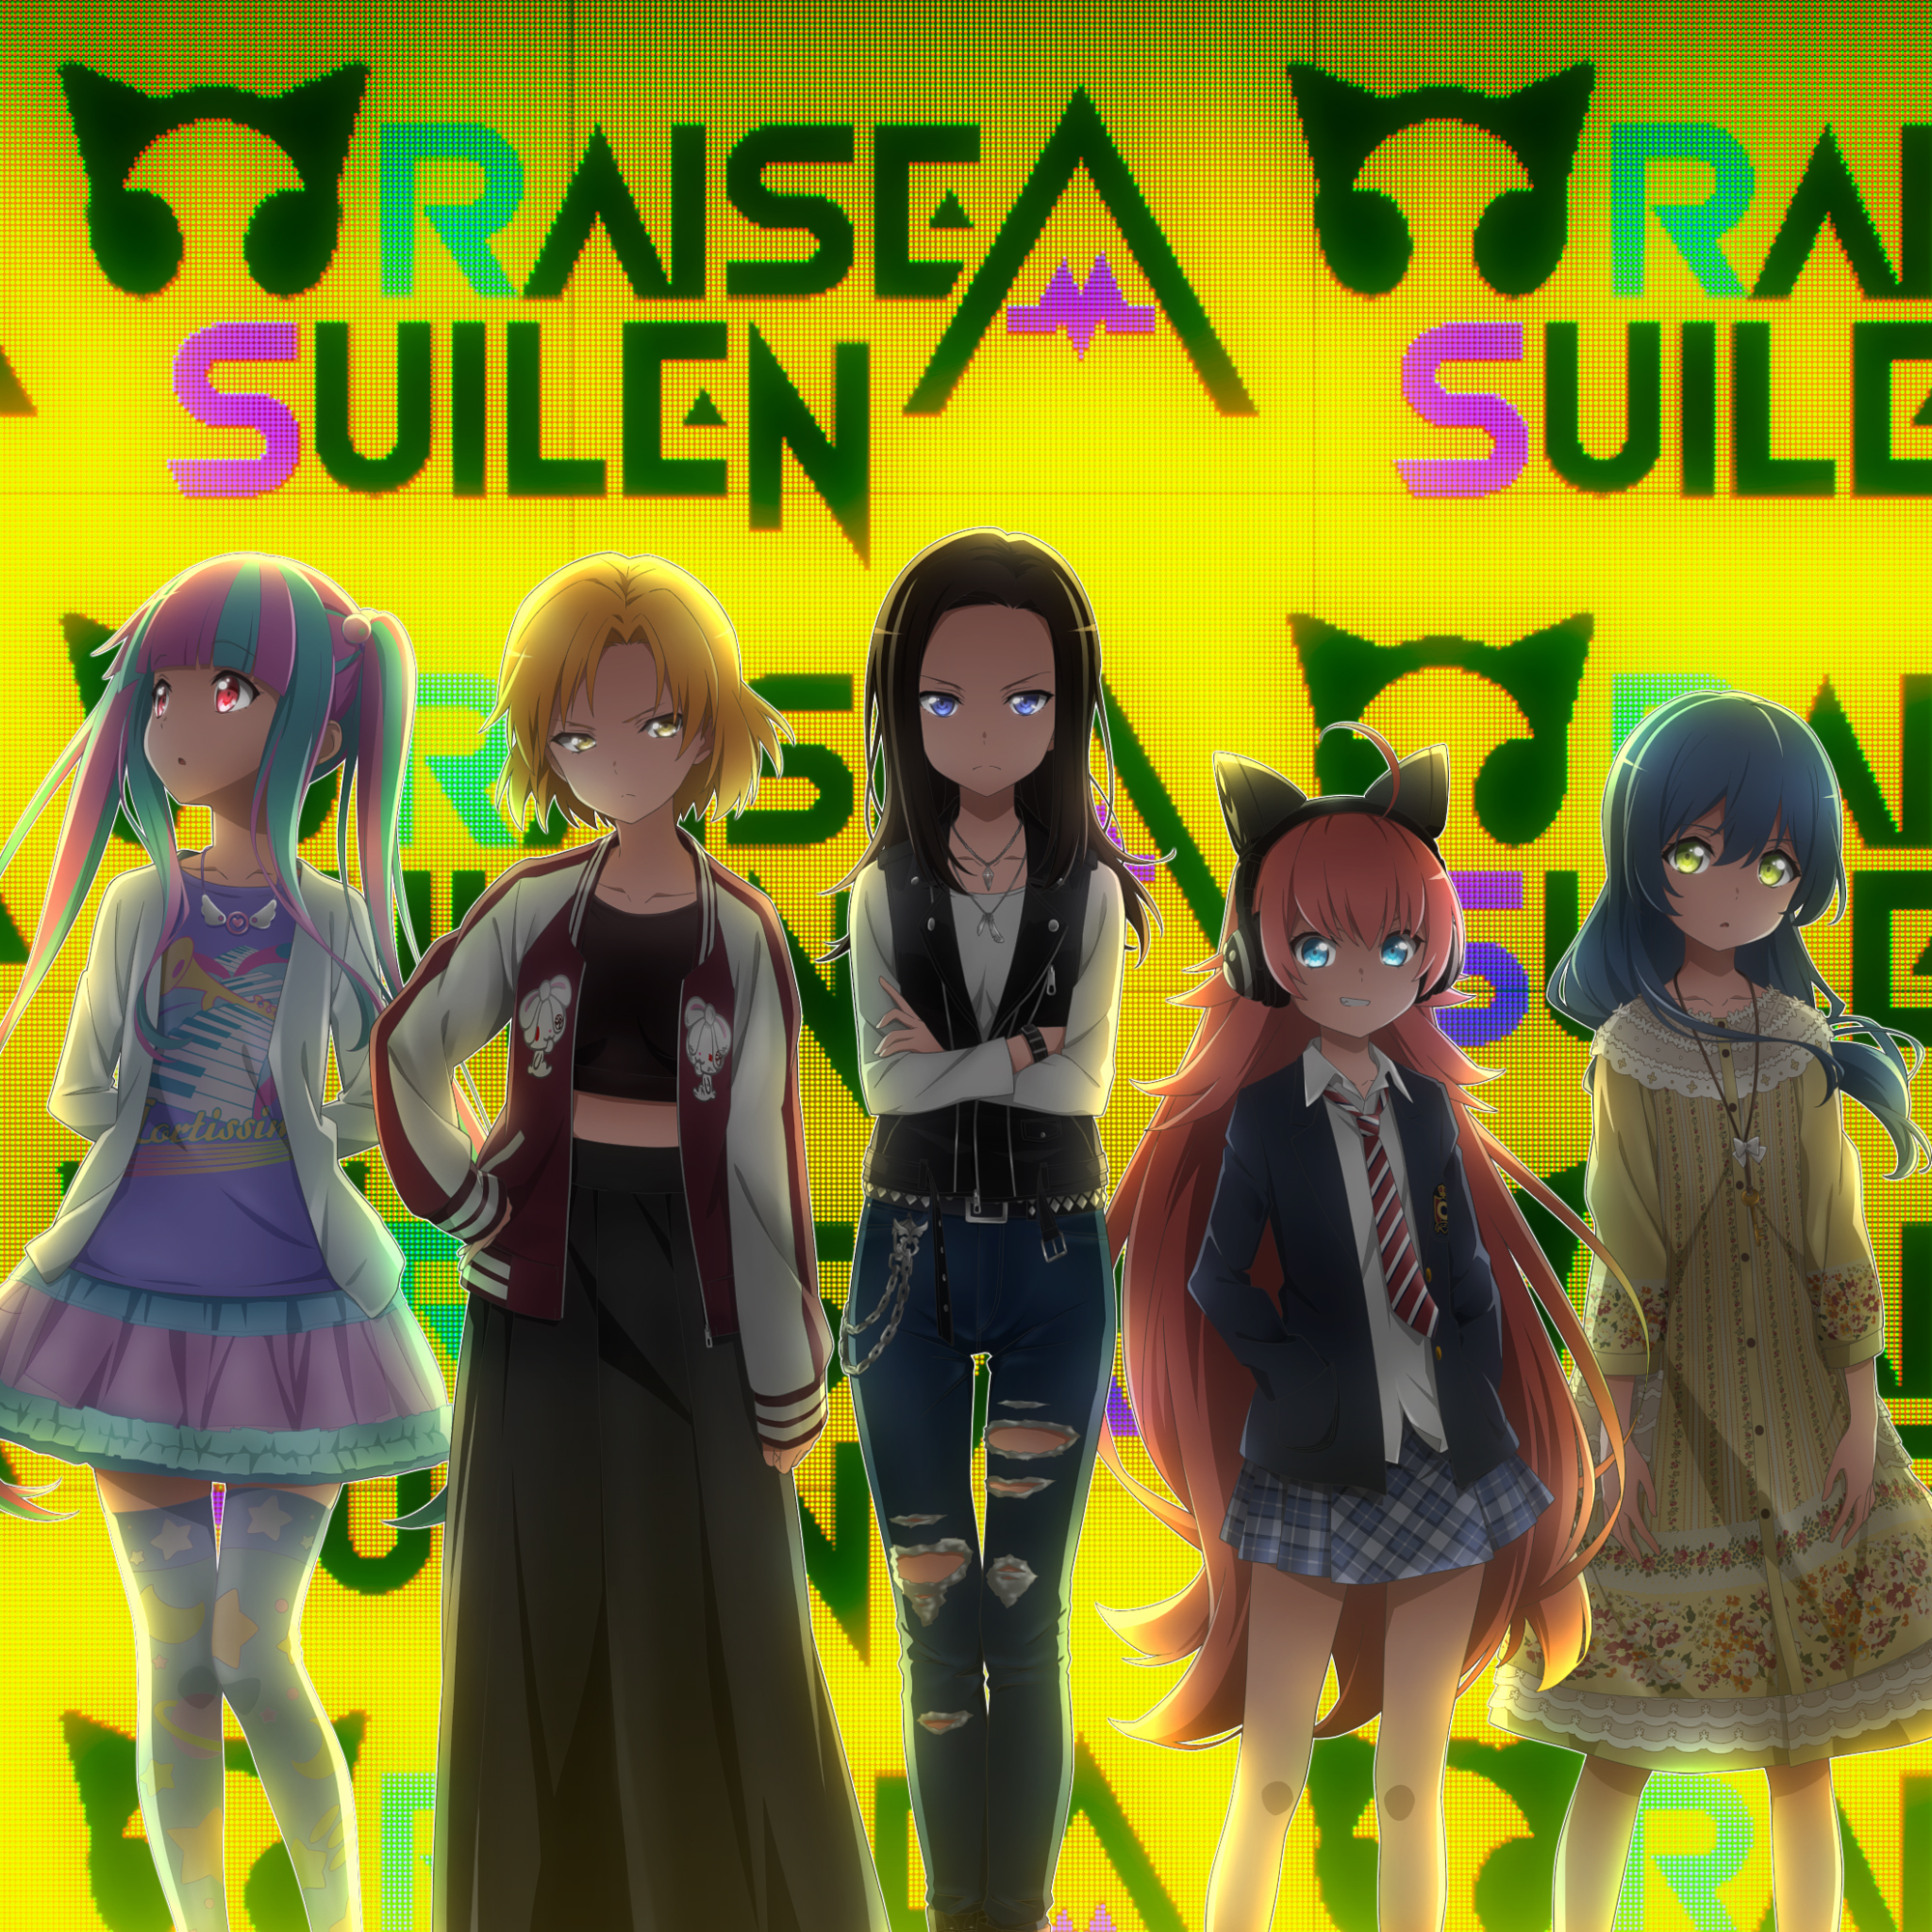 *ついに「RAISE A SUILEN」のコラボベース・ギター発売です！ ]] 大人気プロジェクト「[!!BanG Dream! !!]」から生まれた第3のリアルライブバンド「[!!RAISE A SUILEN!!]」の[!!コラボ商品が発売!!]となります！ バンドリはちょうど今年1月からアニメ第 […]